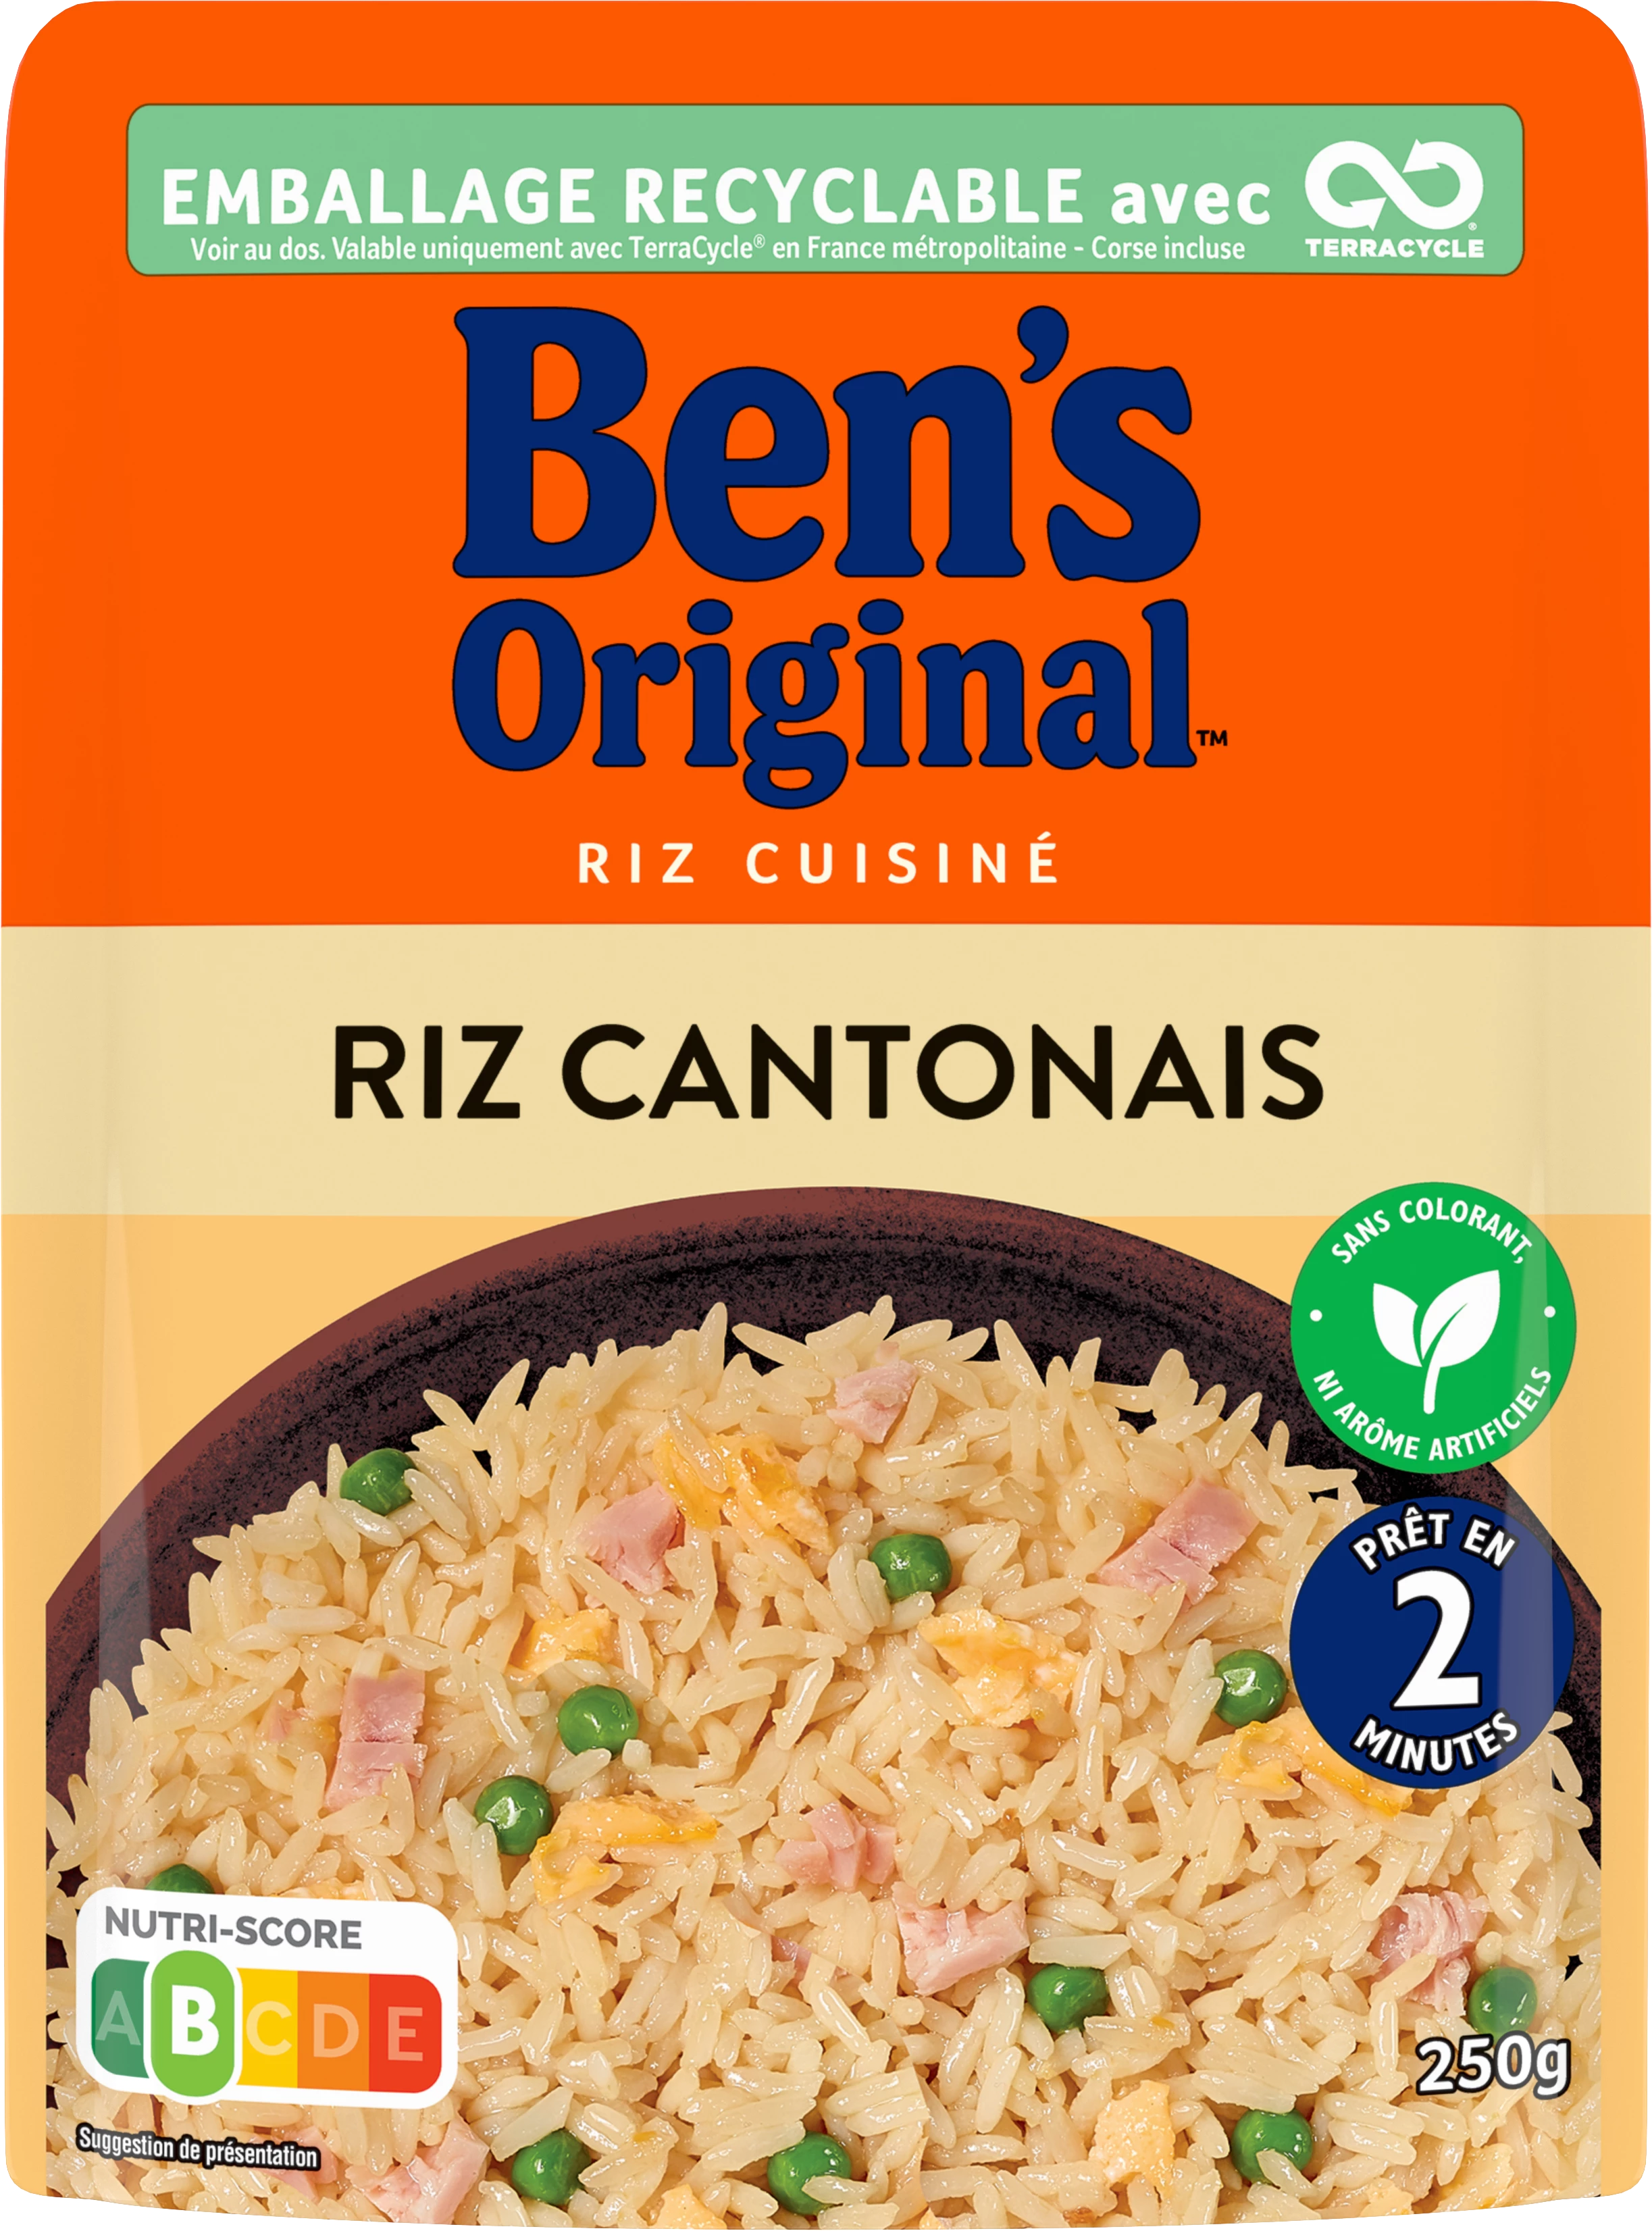 أرز كانتونيز 2 دقيقة 250 جم